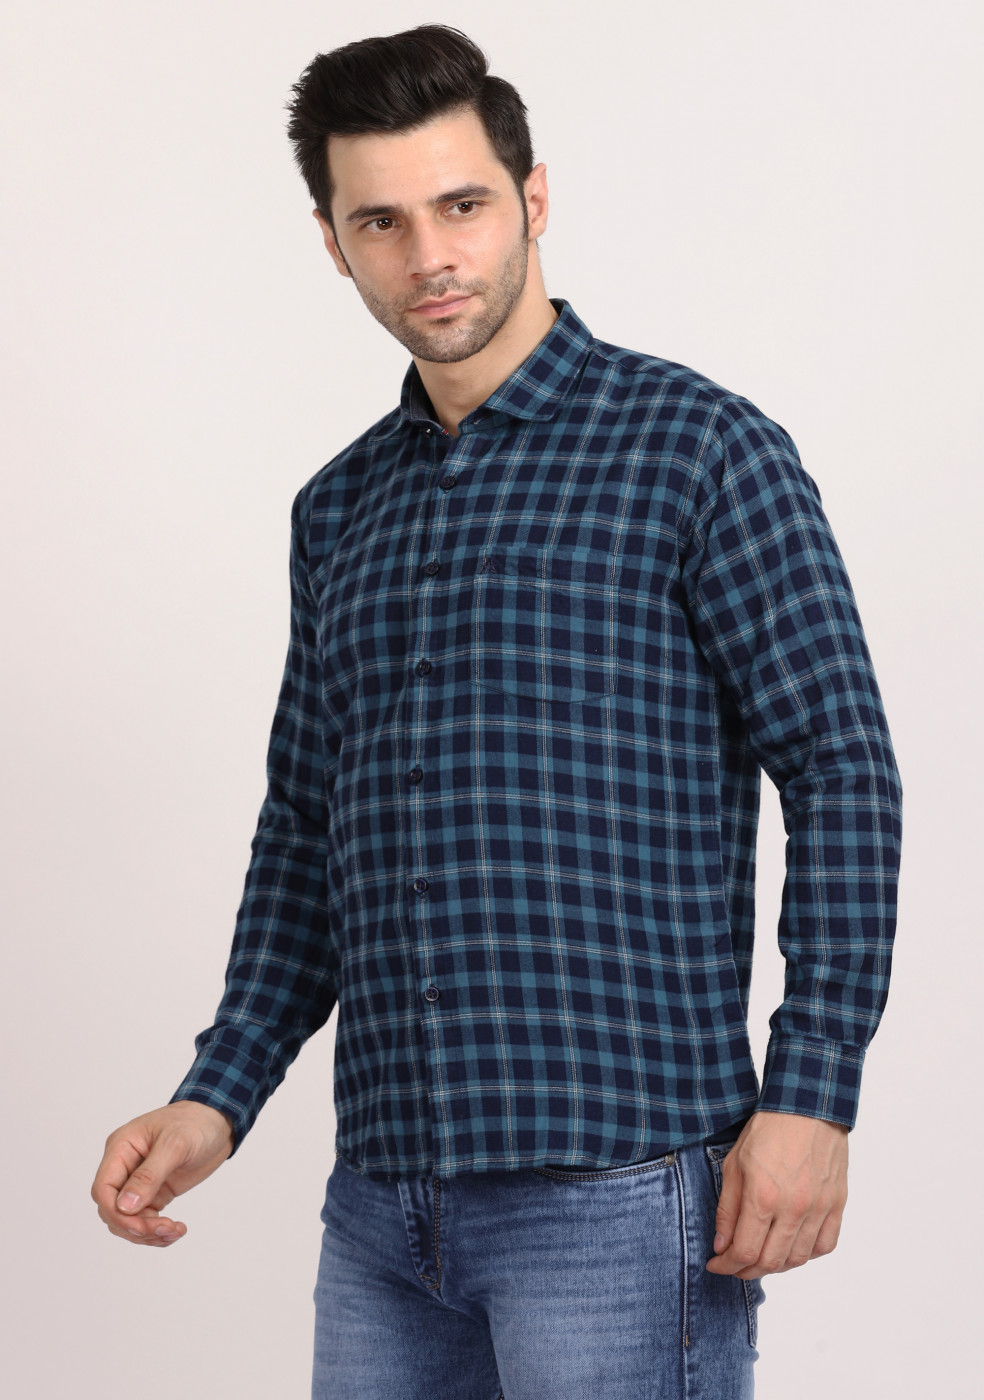 ASHTOM Turquoise Blue Check Regular Fit Cotton Shirt For Men